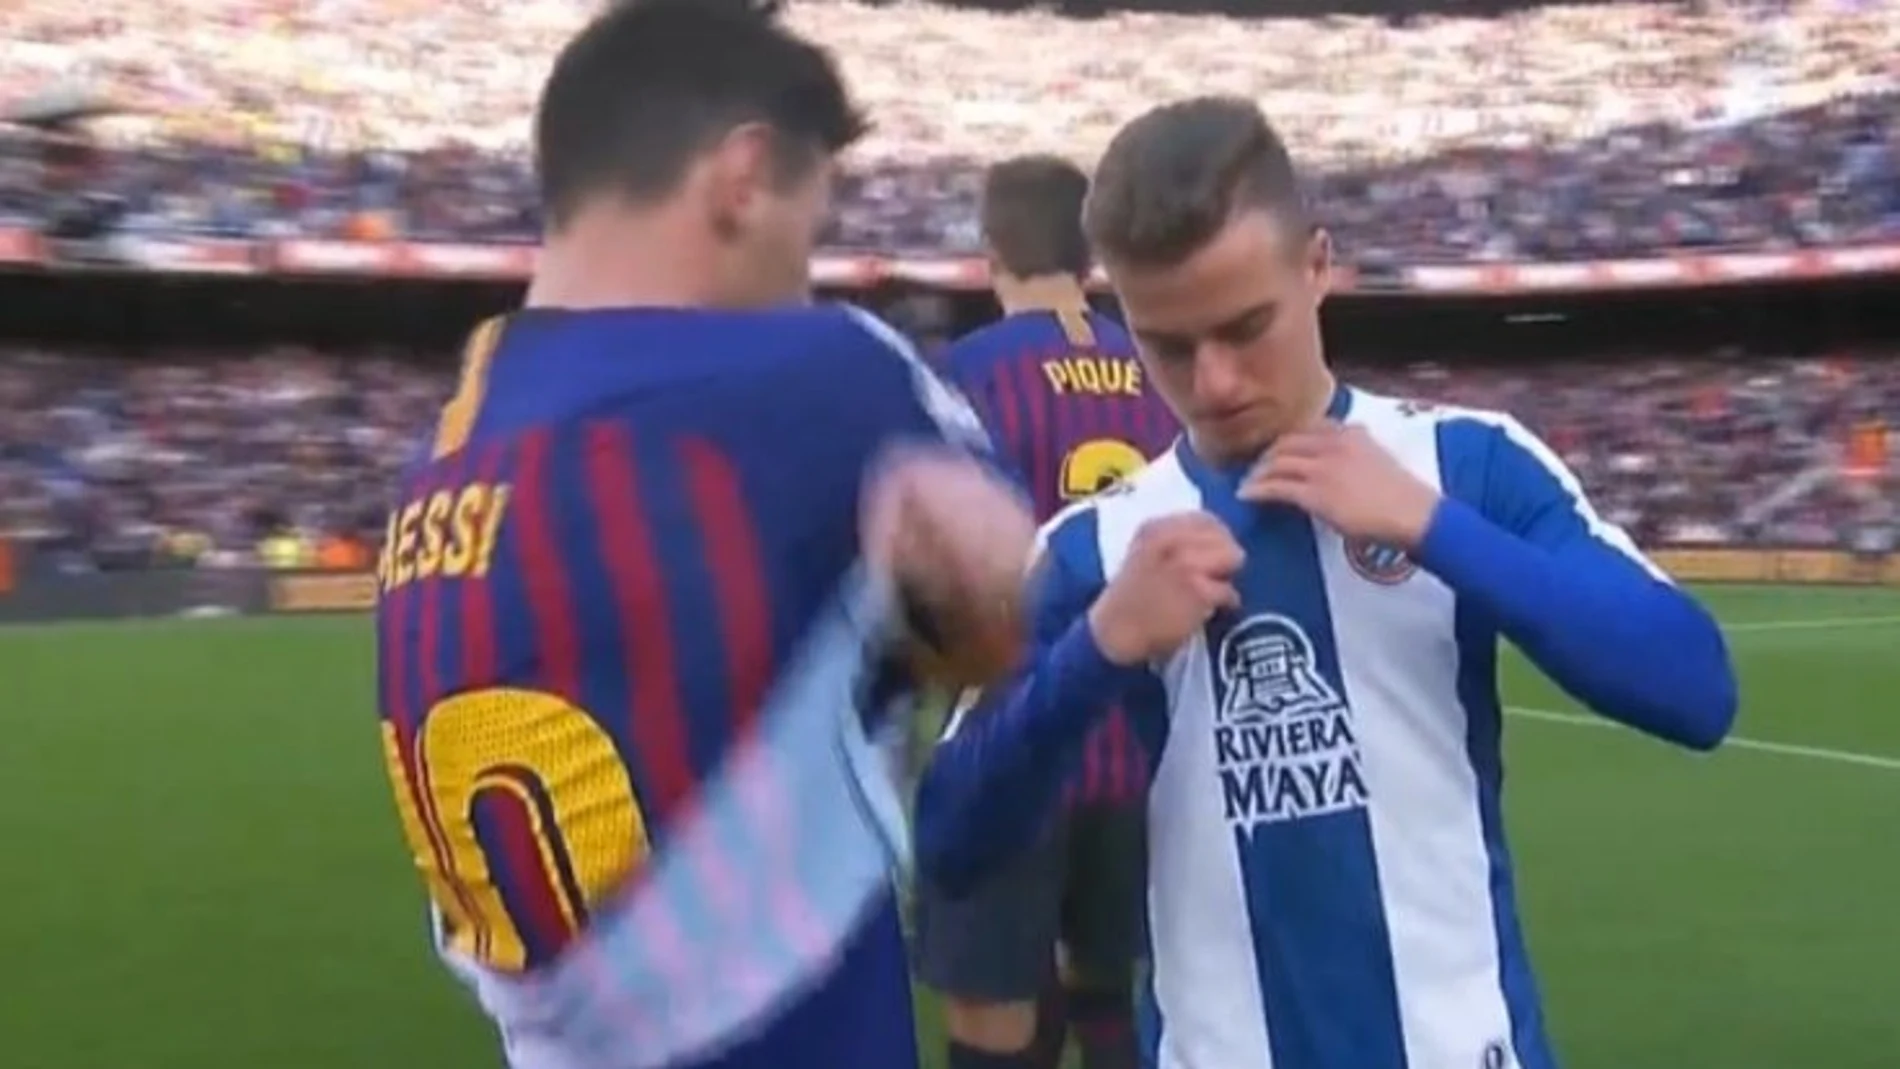 Vergonzoso Crudo ignorar Adrián Pedrosa, amenazado e insultado por cambiarse la camiseta con Messi  tras el derbi